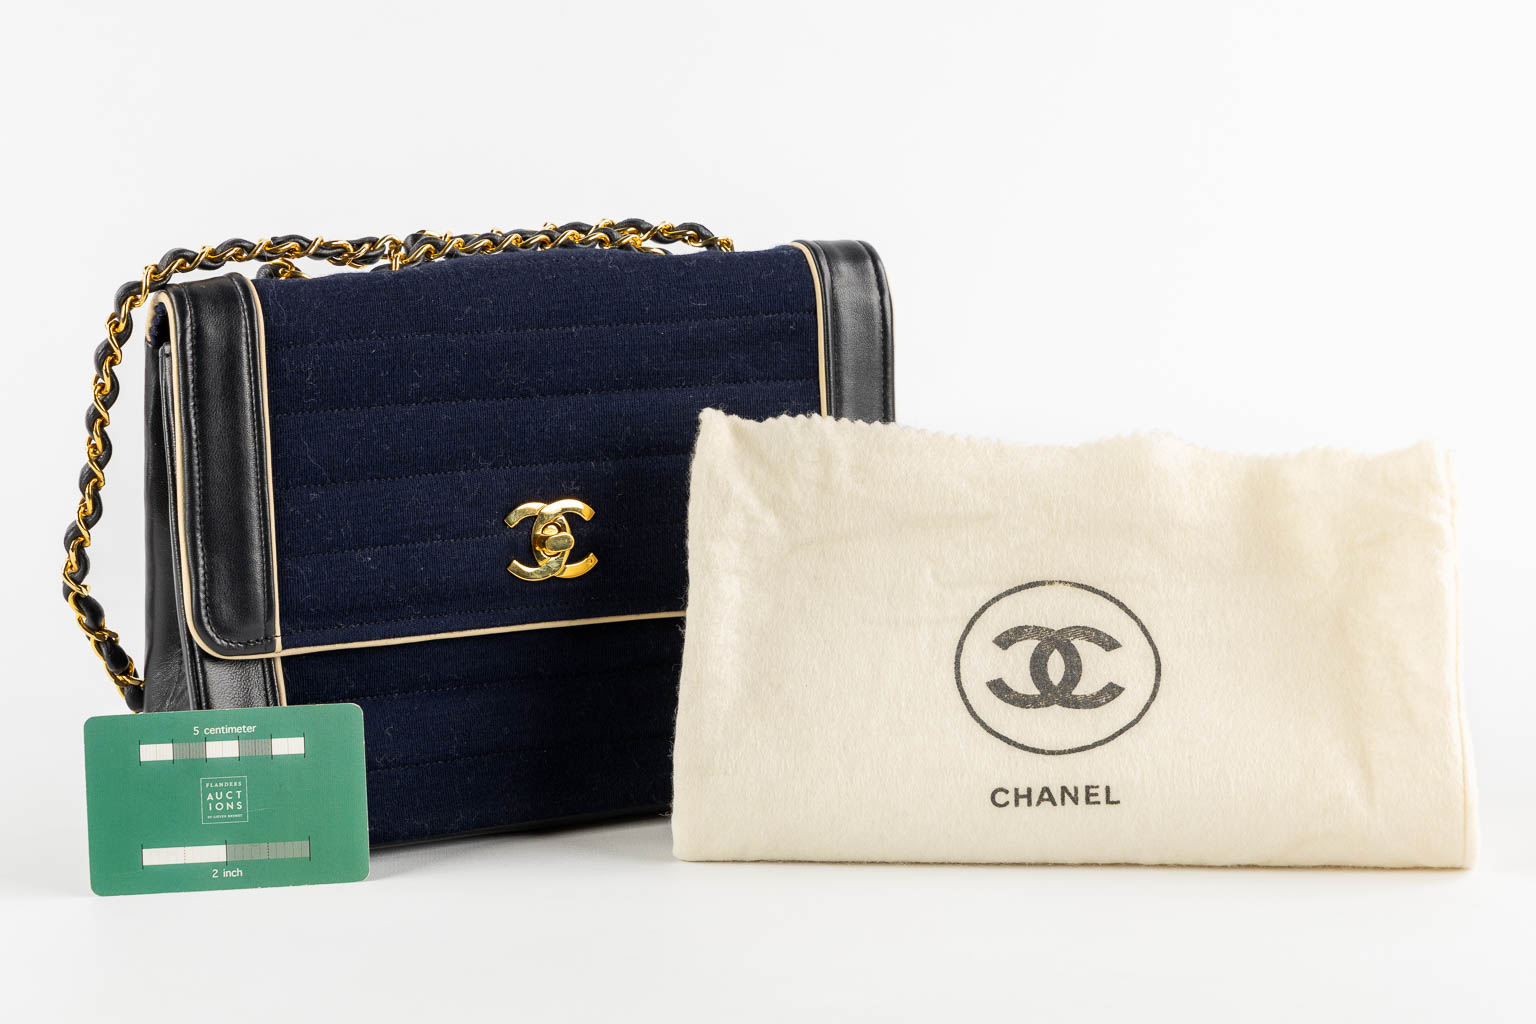 Chanel Classique, a woman